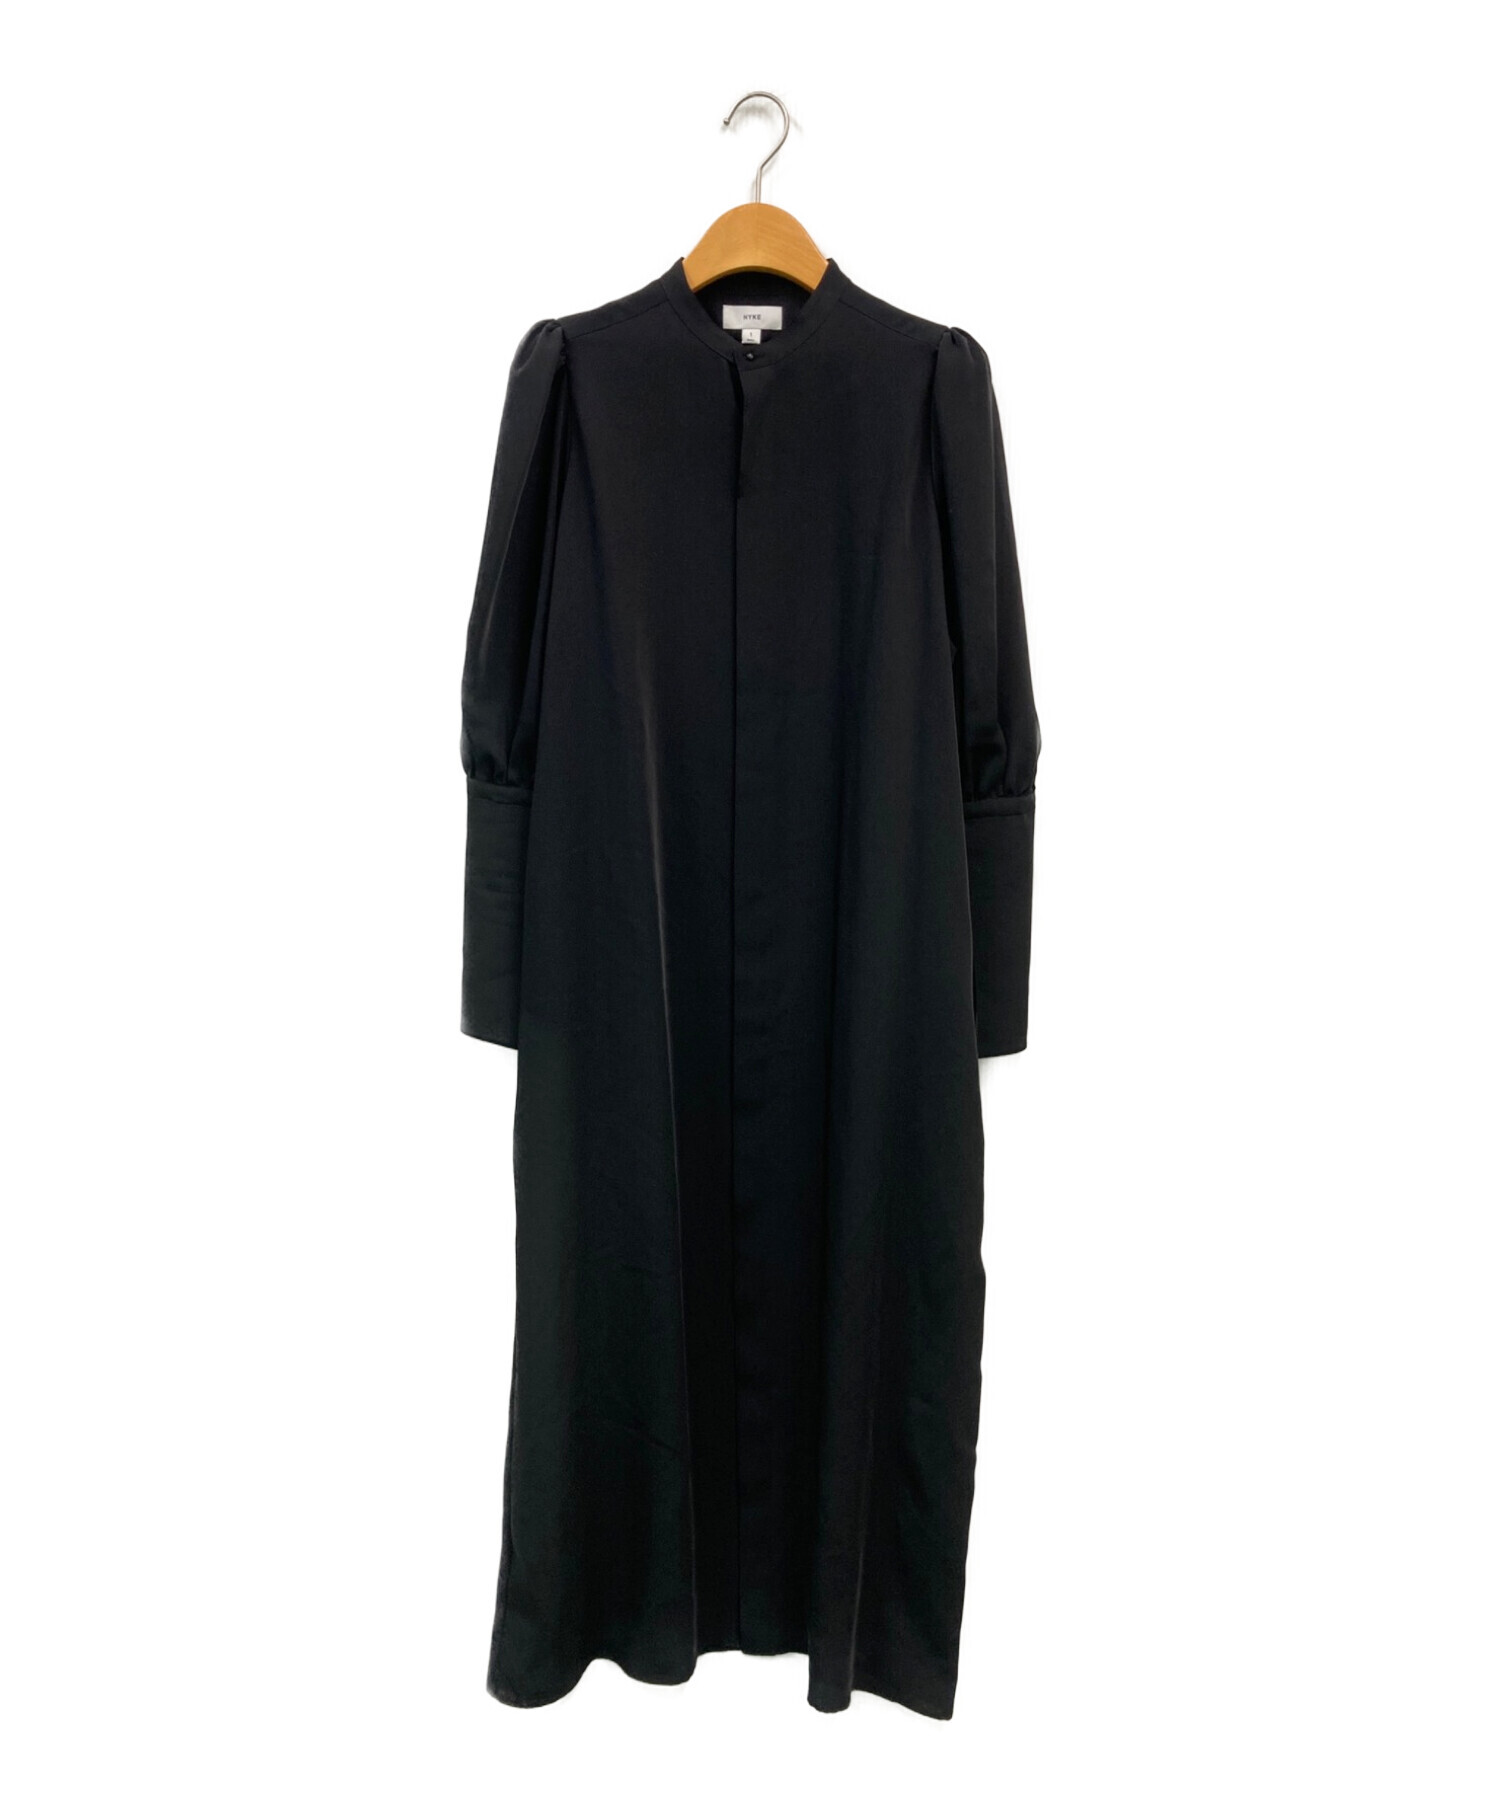 HYKE (ハイク) TWIST SATIN BALLOON SLEEVE DRESS ブラック サイズ:1